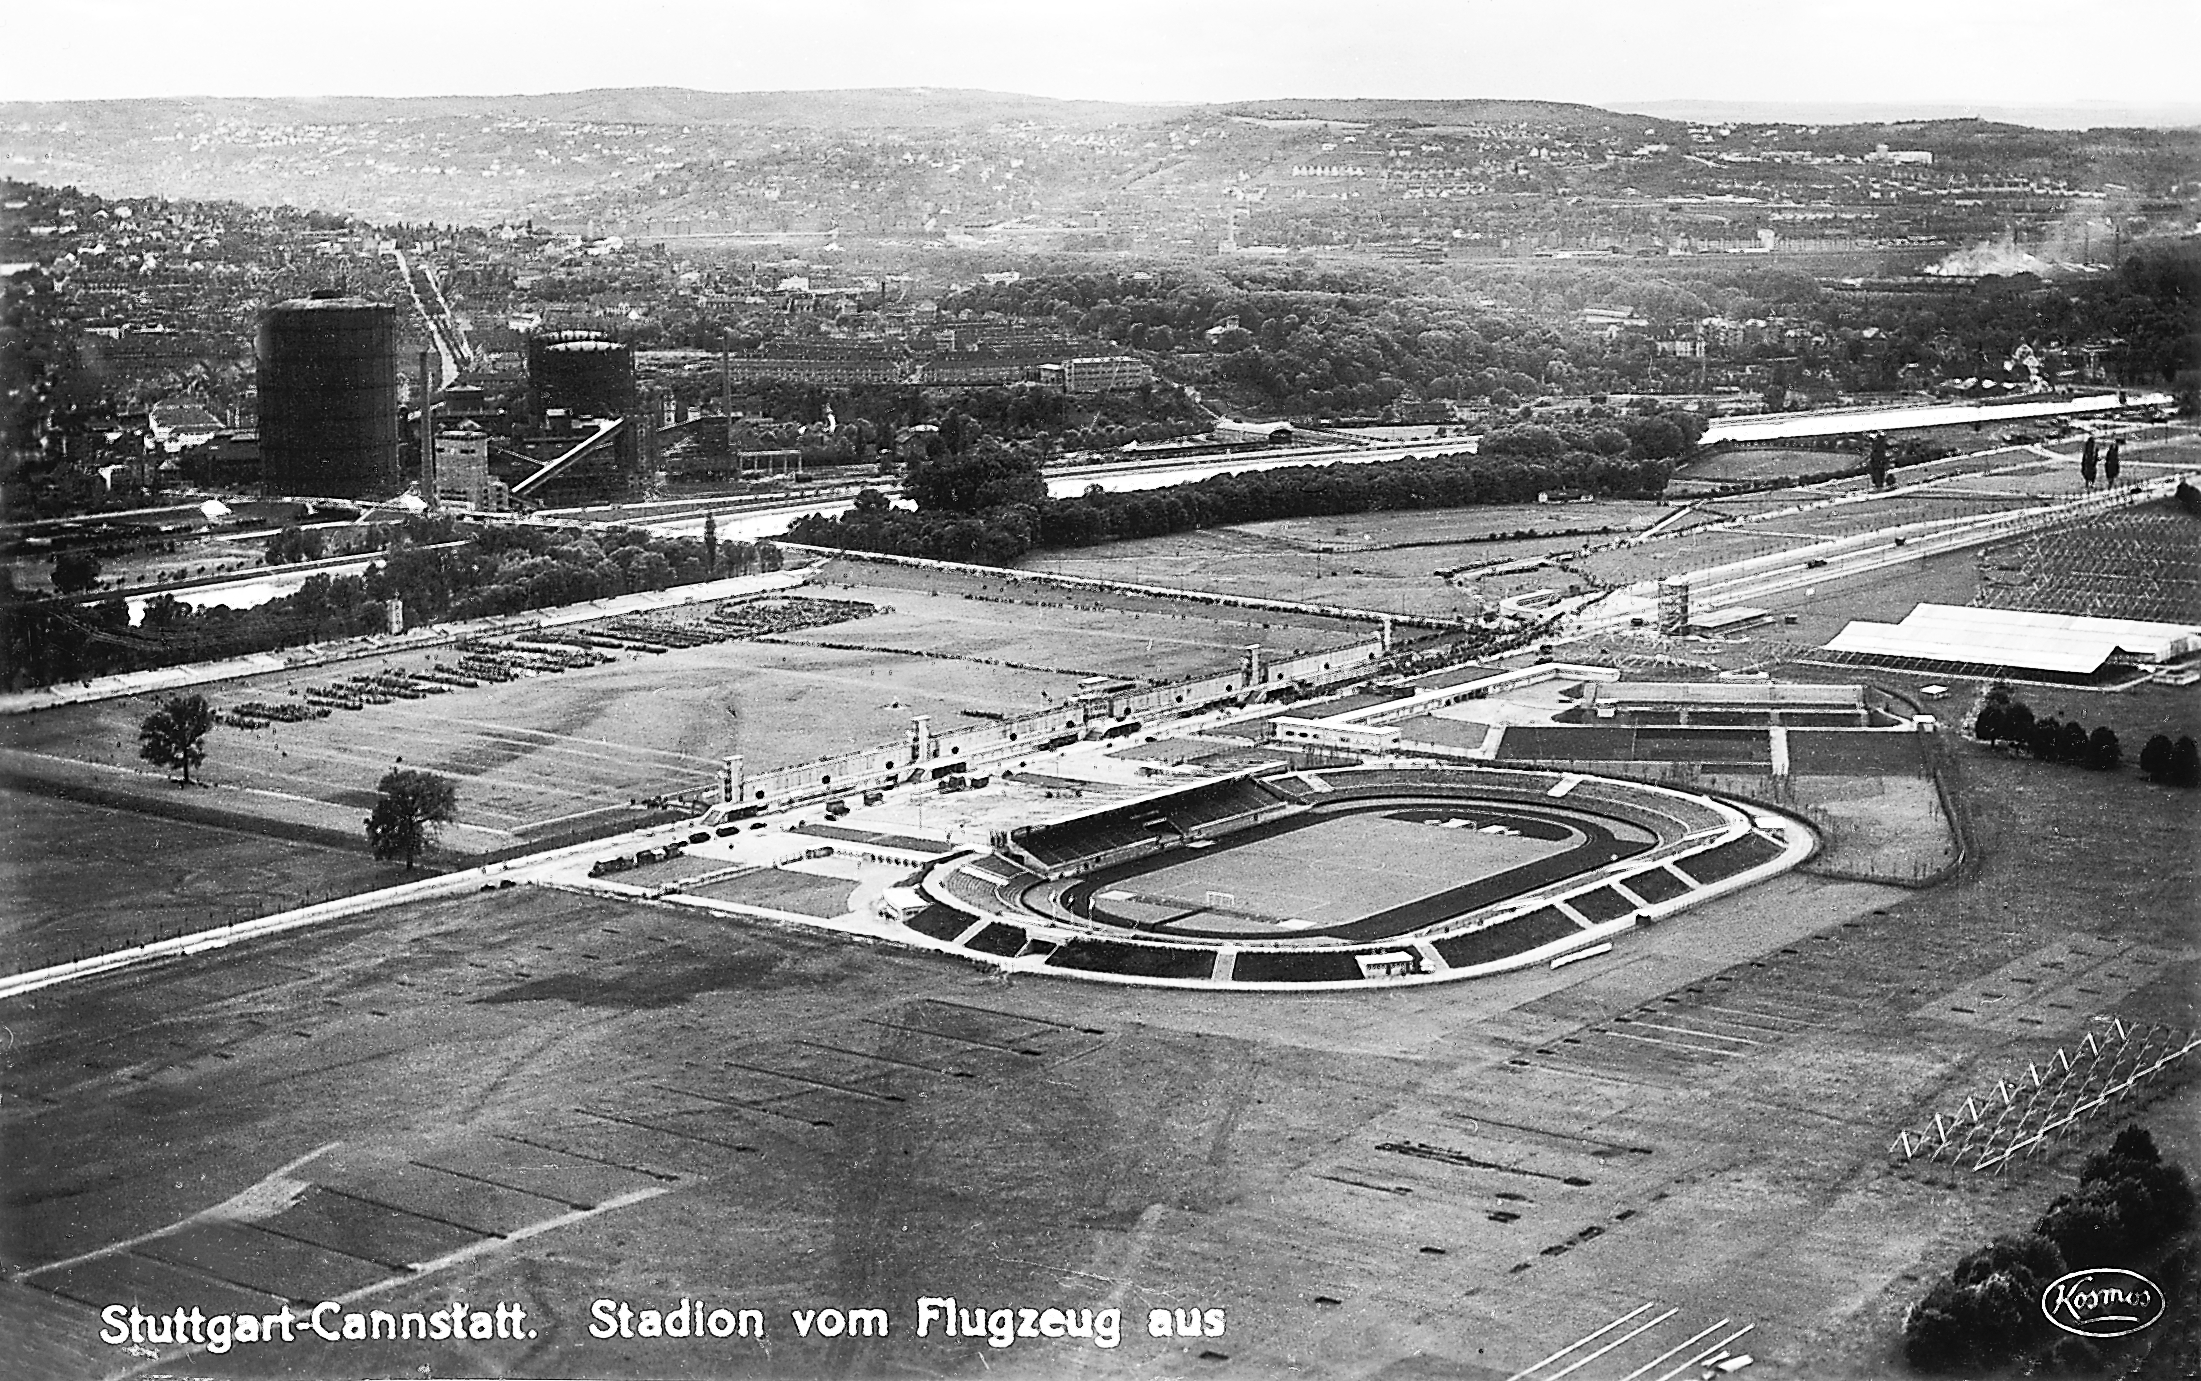 Luftbild des Turnfestgeländes mit Stadion vom Juli 1933.